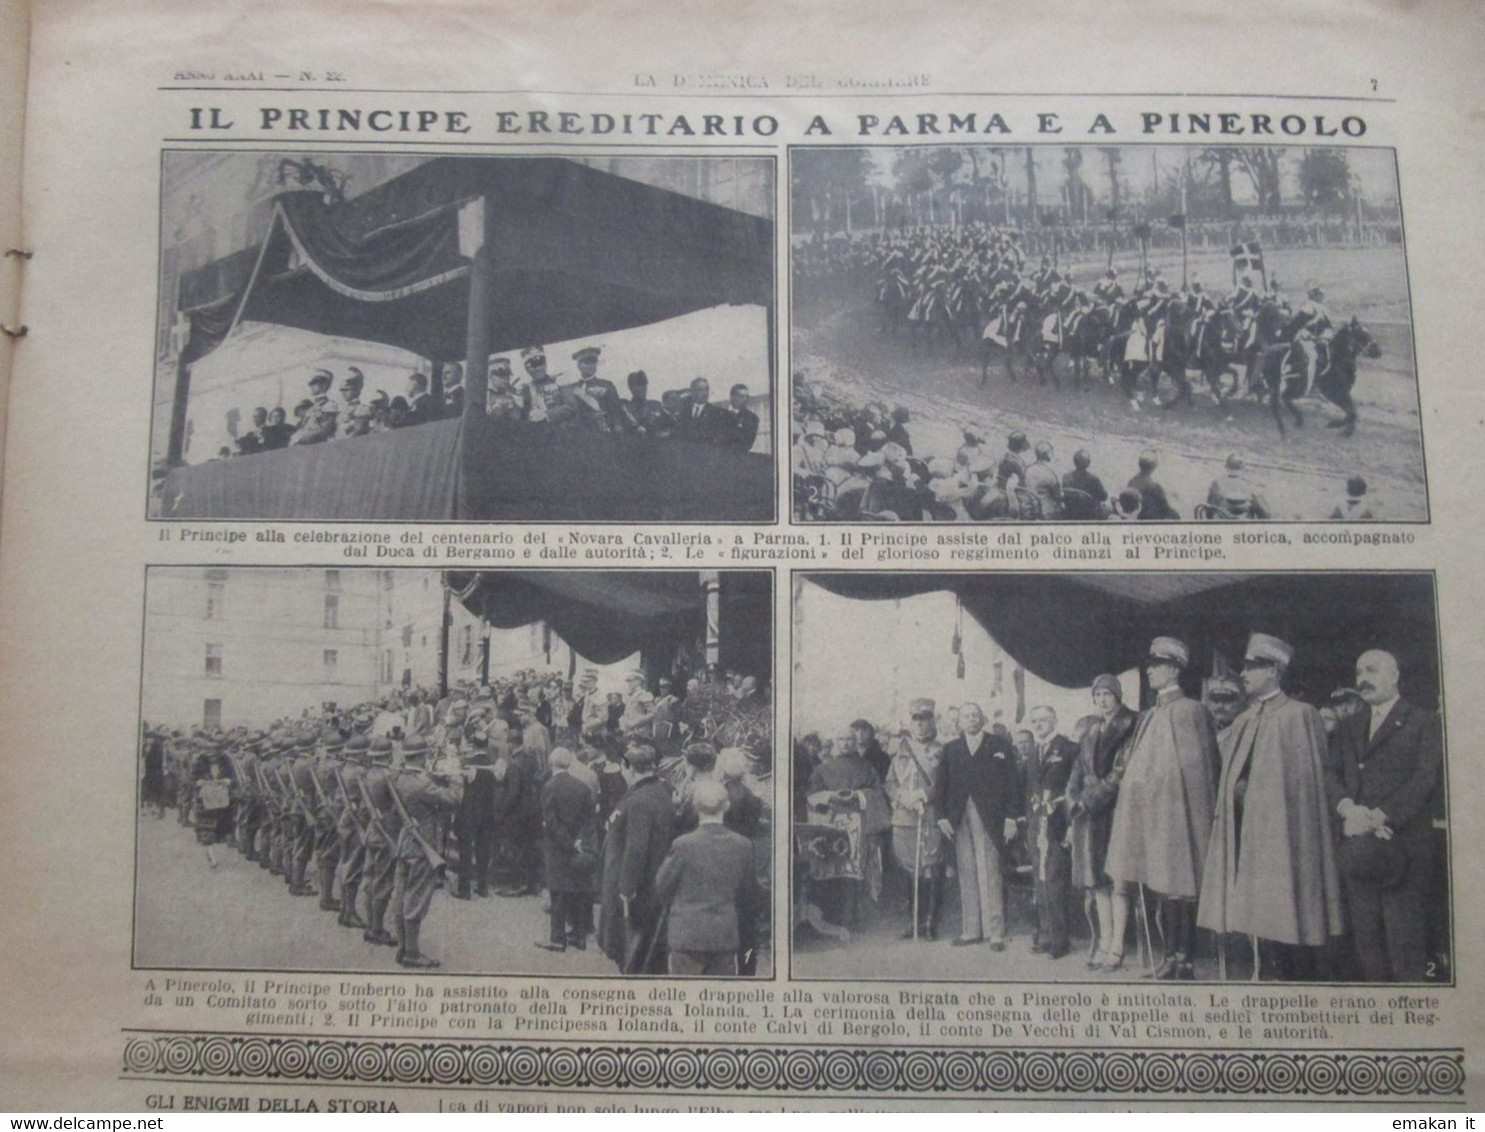 # DOMENICA DEL CORRIERE N 22 1929 SOVRANI D'ITALIA A RODI / CAPRINO VERONESE / PARMA / PINEROLO - Premières éditions